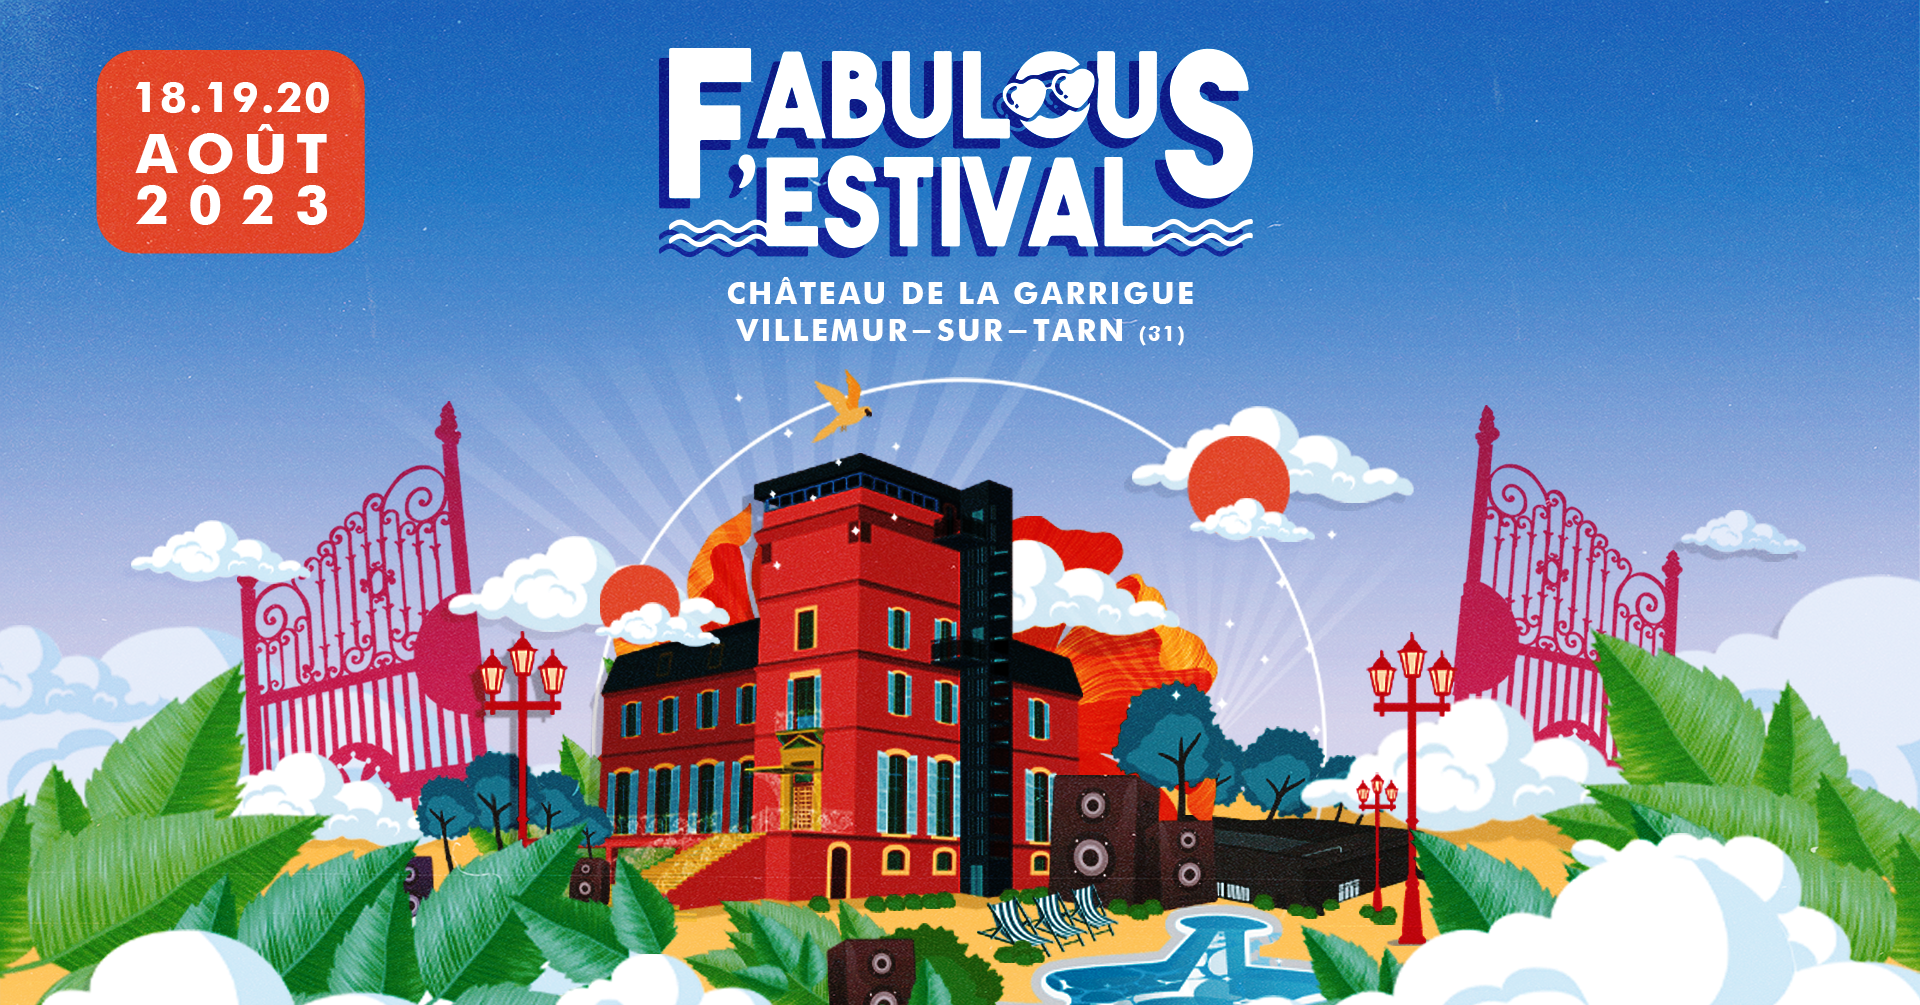 Fabulous Festival 2023 - フライヤー表